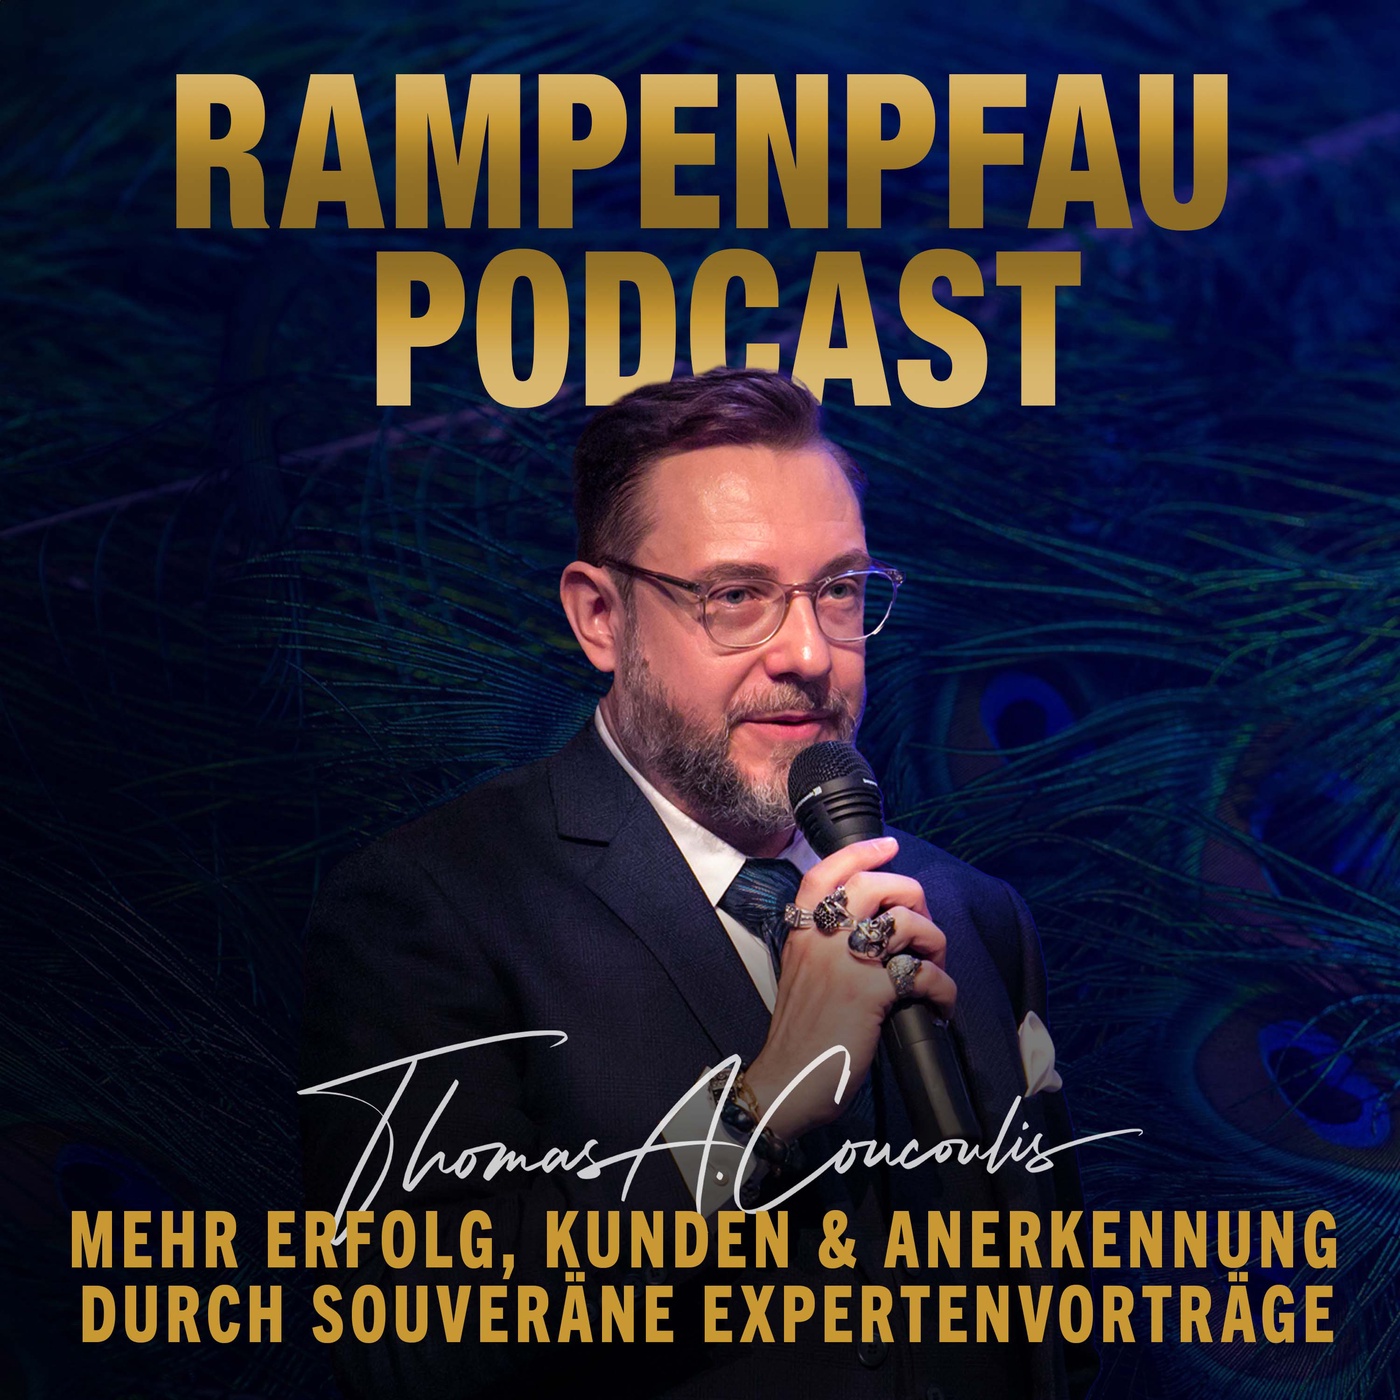 Der Rampenpfau Podcast - Durch souveräne Vorträge vom Unternehmer zum Experten